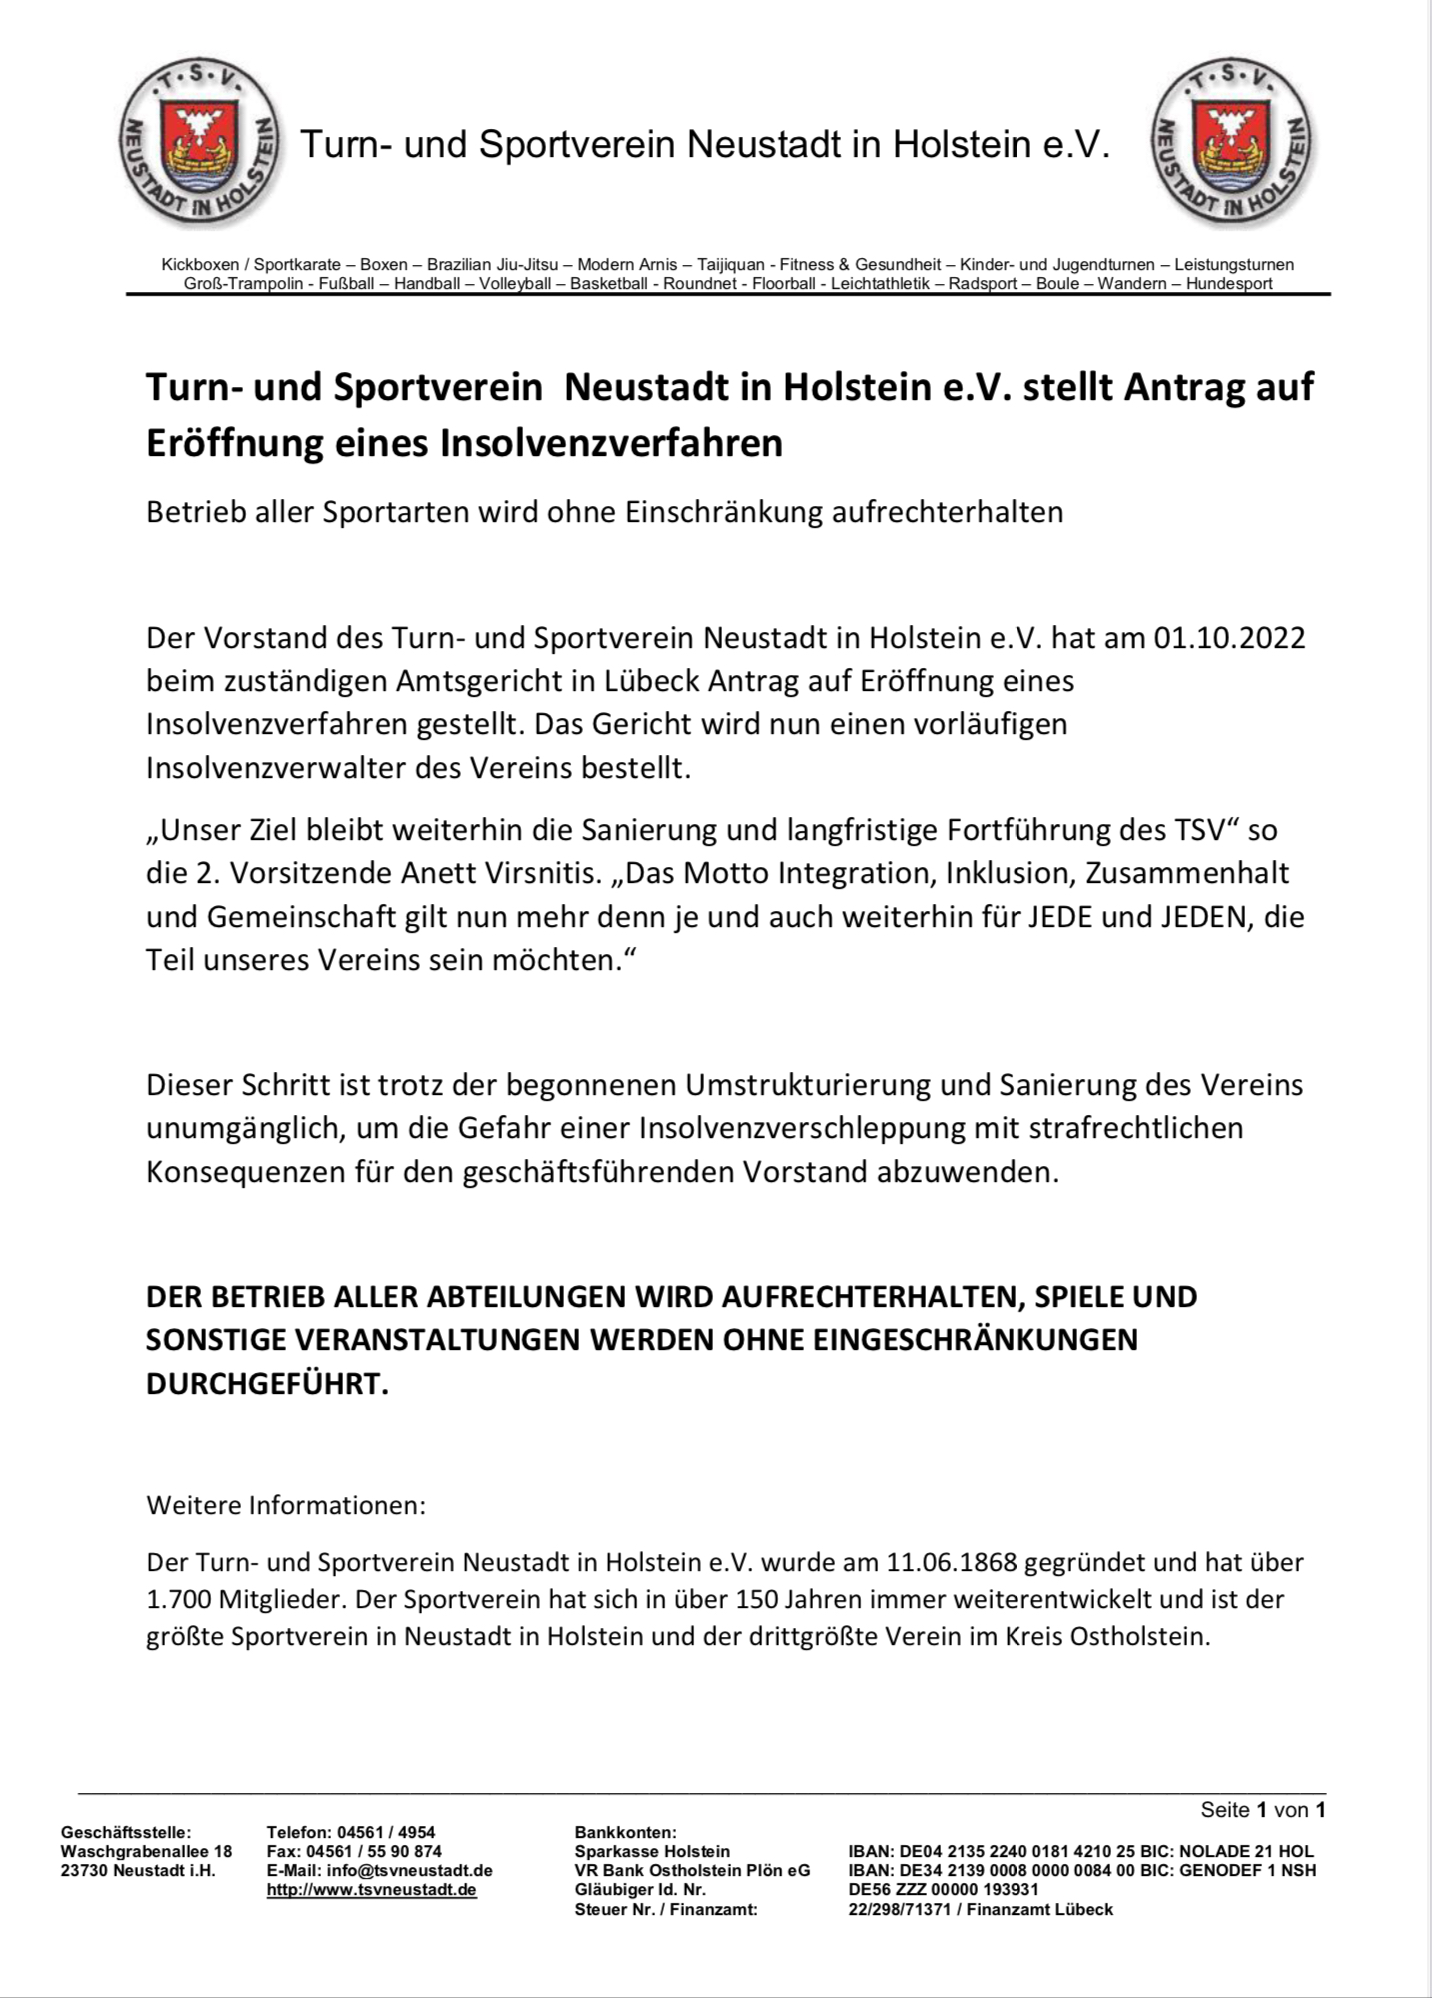 Turn- und Sportverein Neustadt in Holstein e.V. stellt Antrag auf Eröffnung eines Insolvenzverfahren